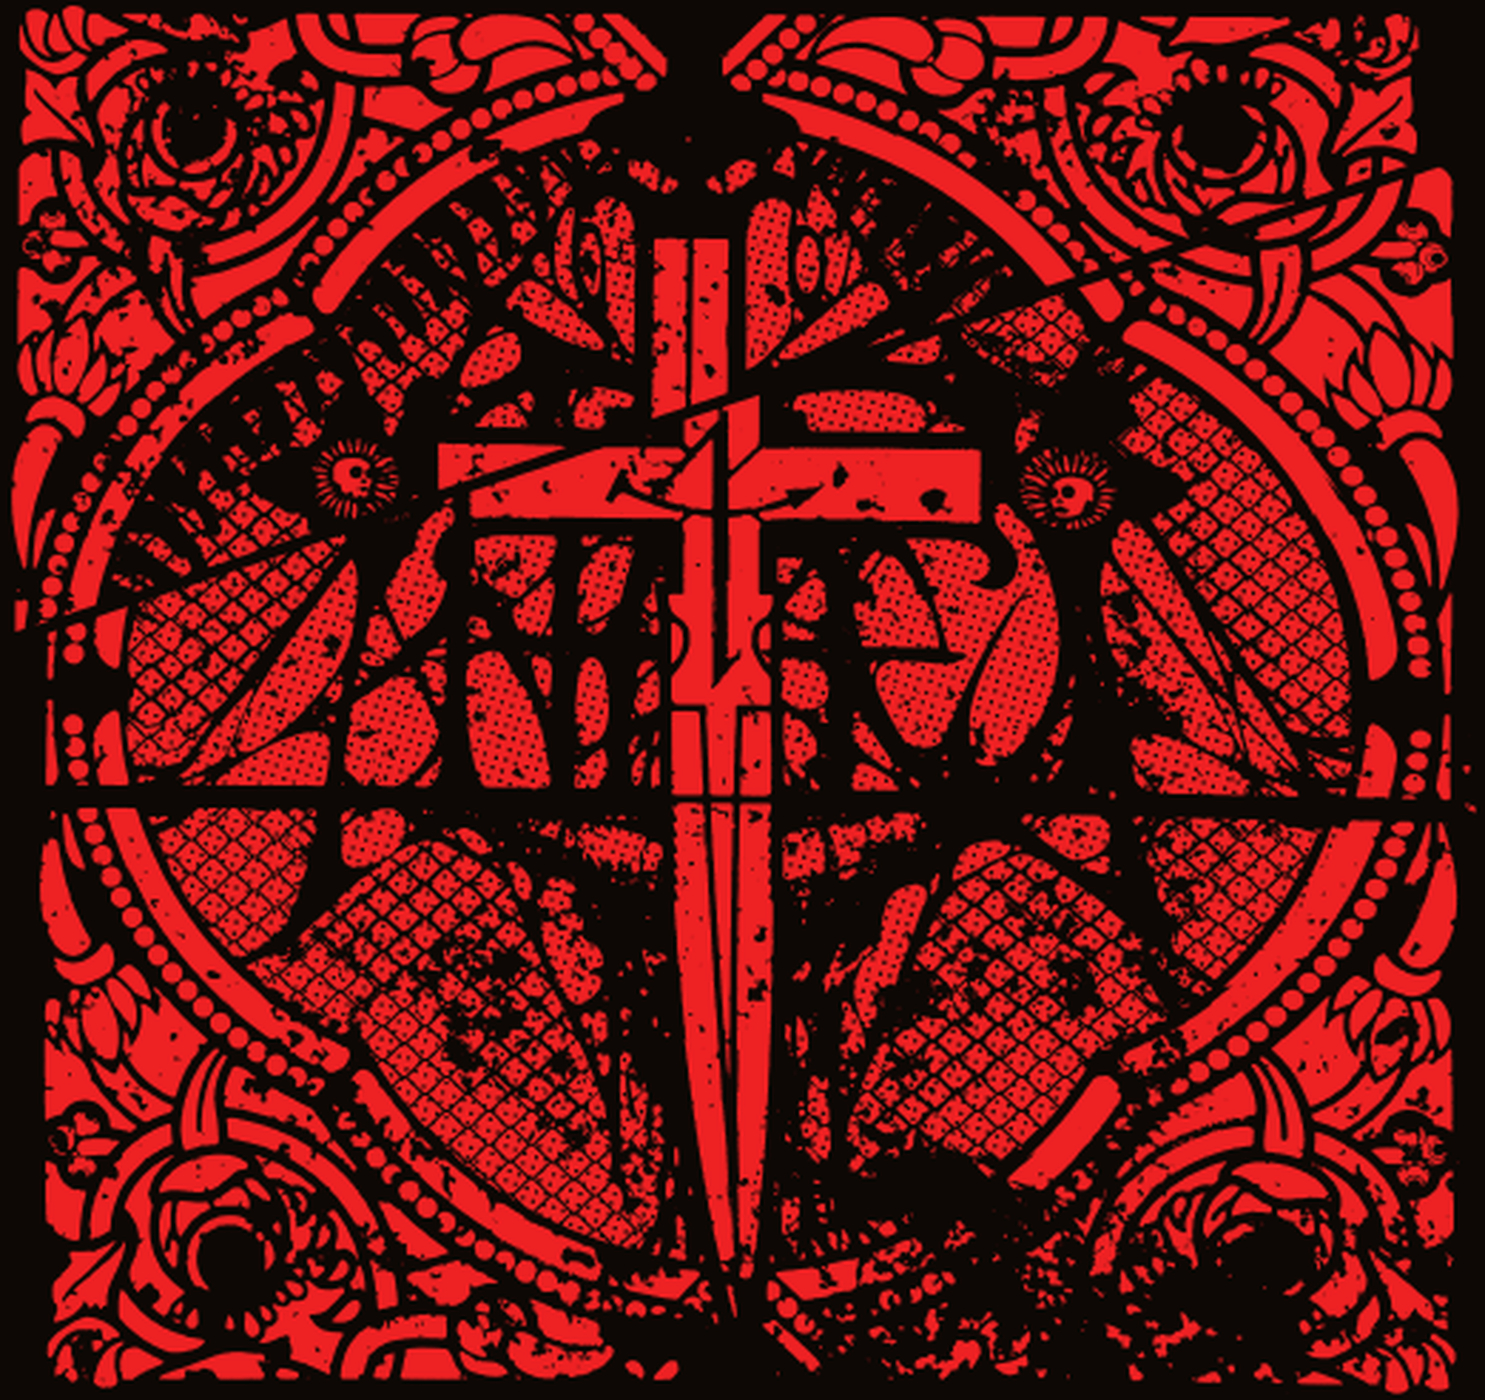 ANTAEUS nuevo album “Condemnation” en streaming